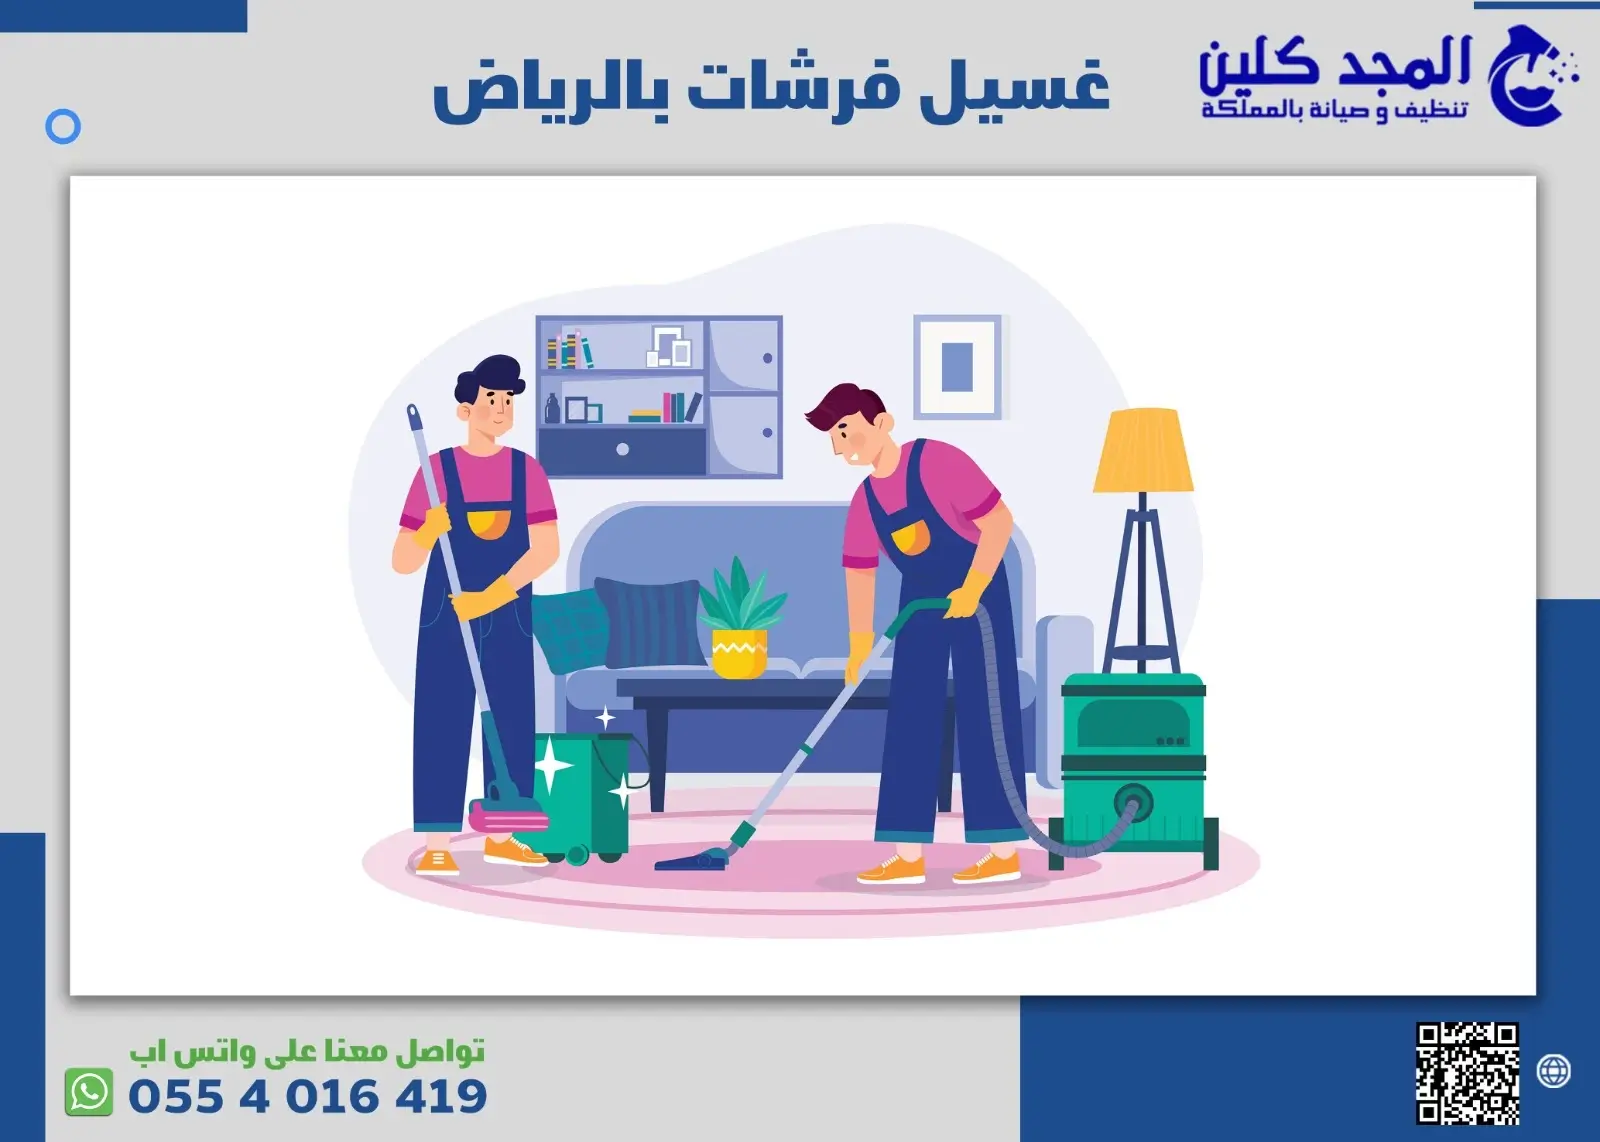 غسيل فرشات بالرياض – خصم 25% على خدمة تنظيف الفرشات في الرياض